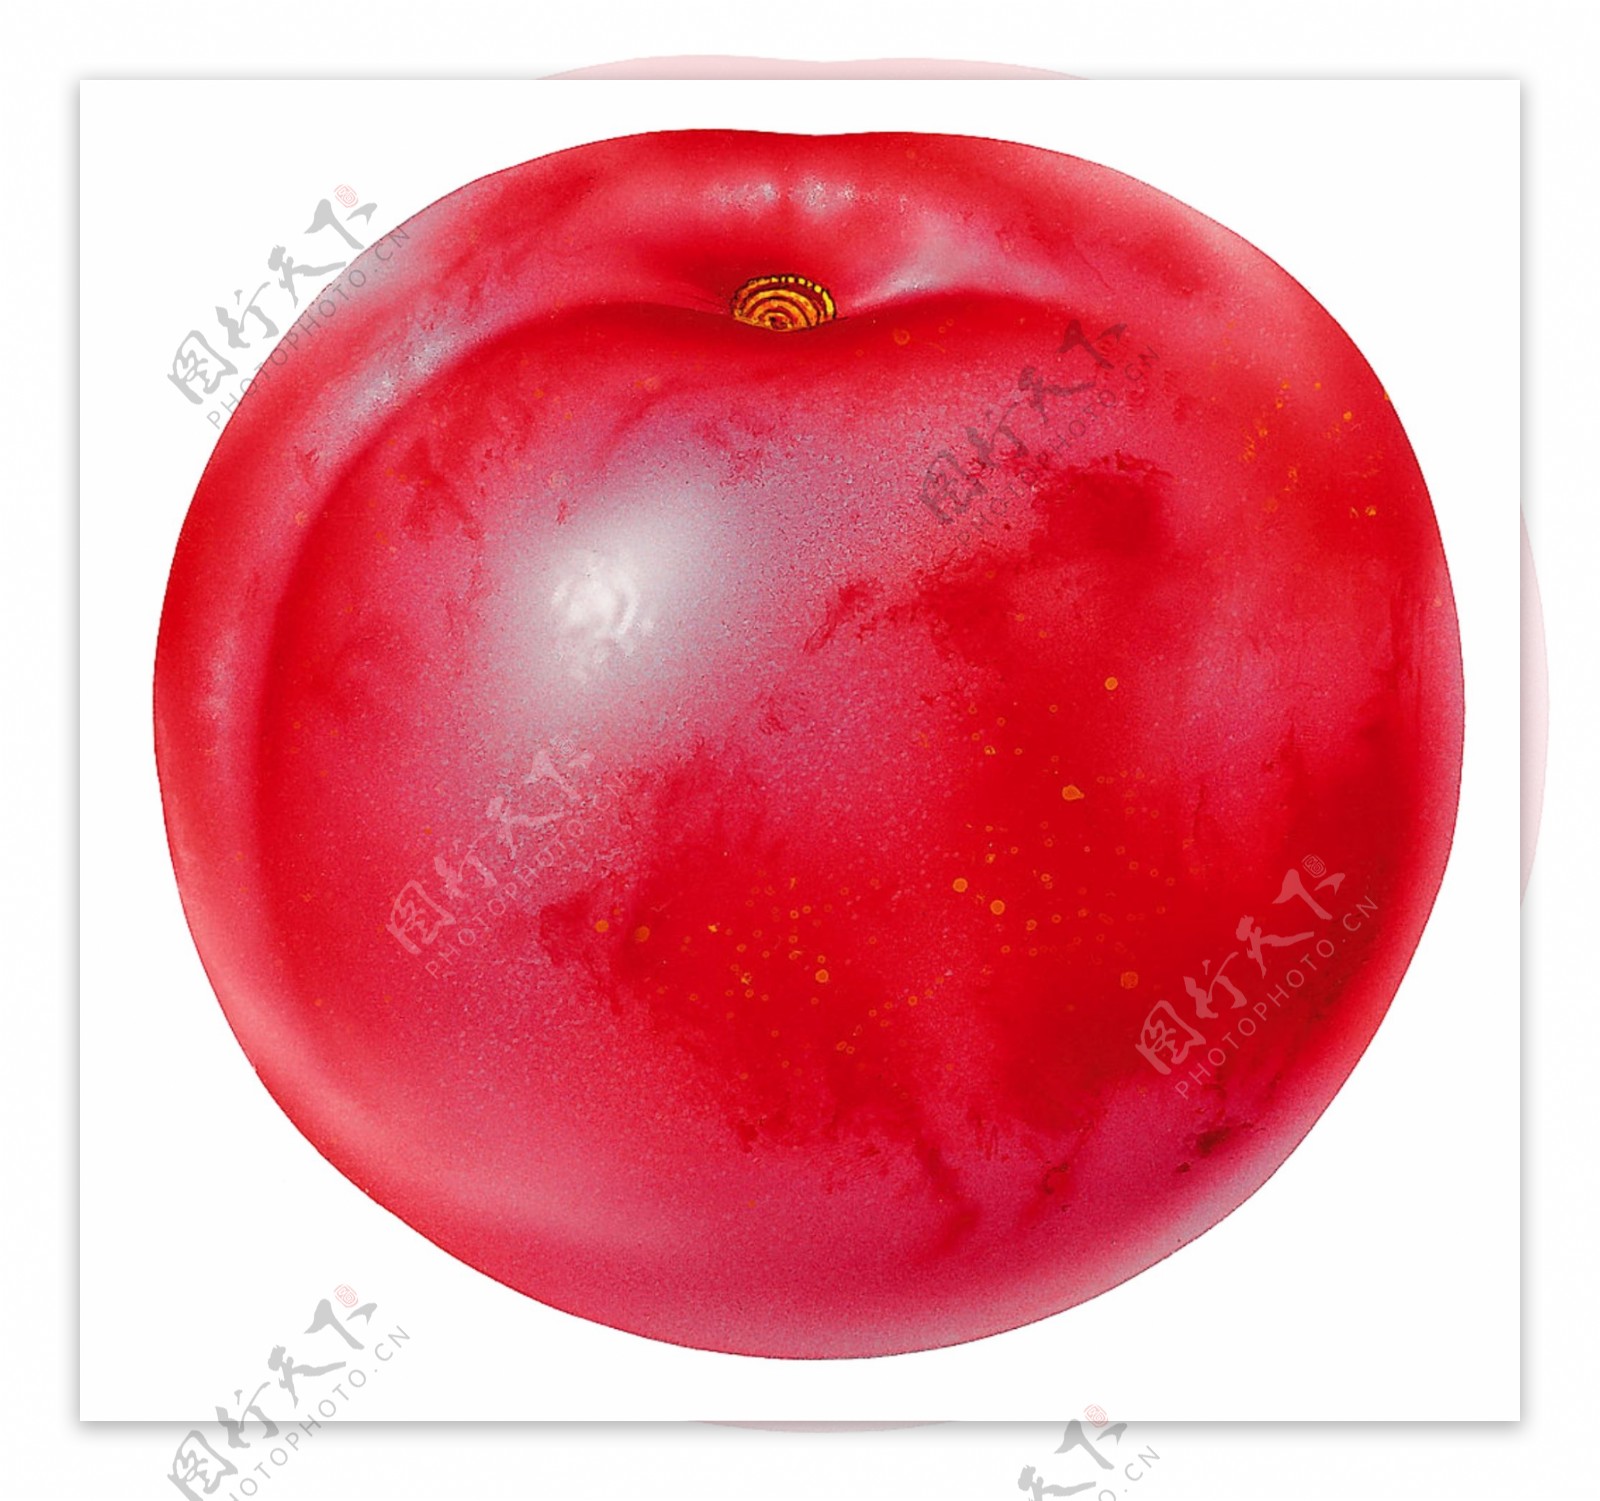 一个番茄